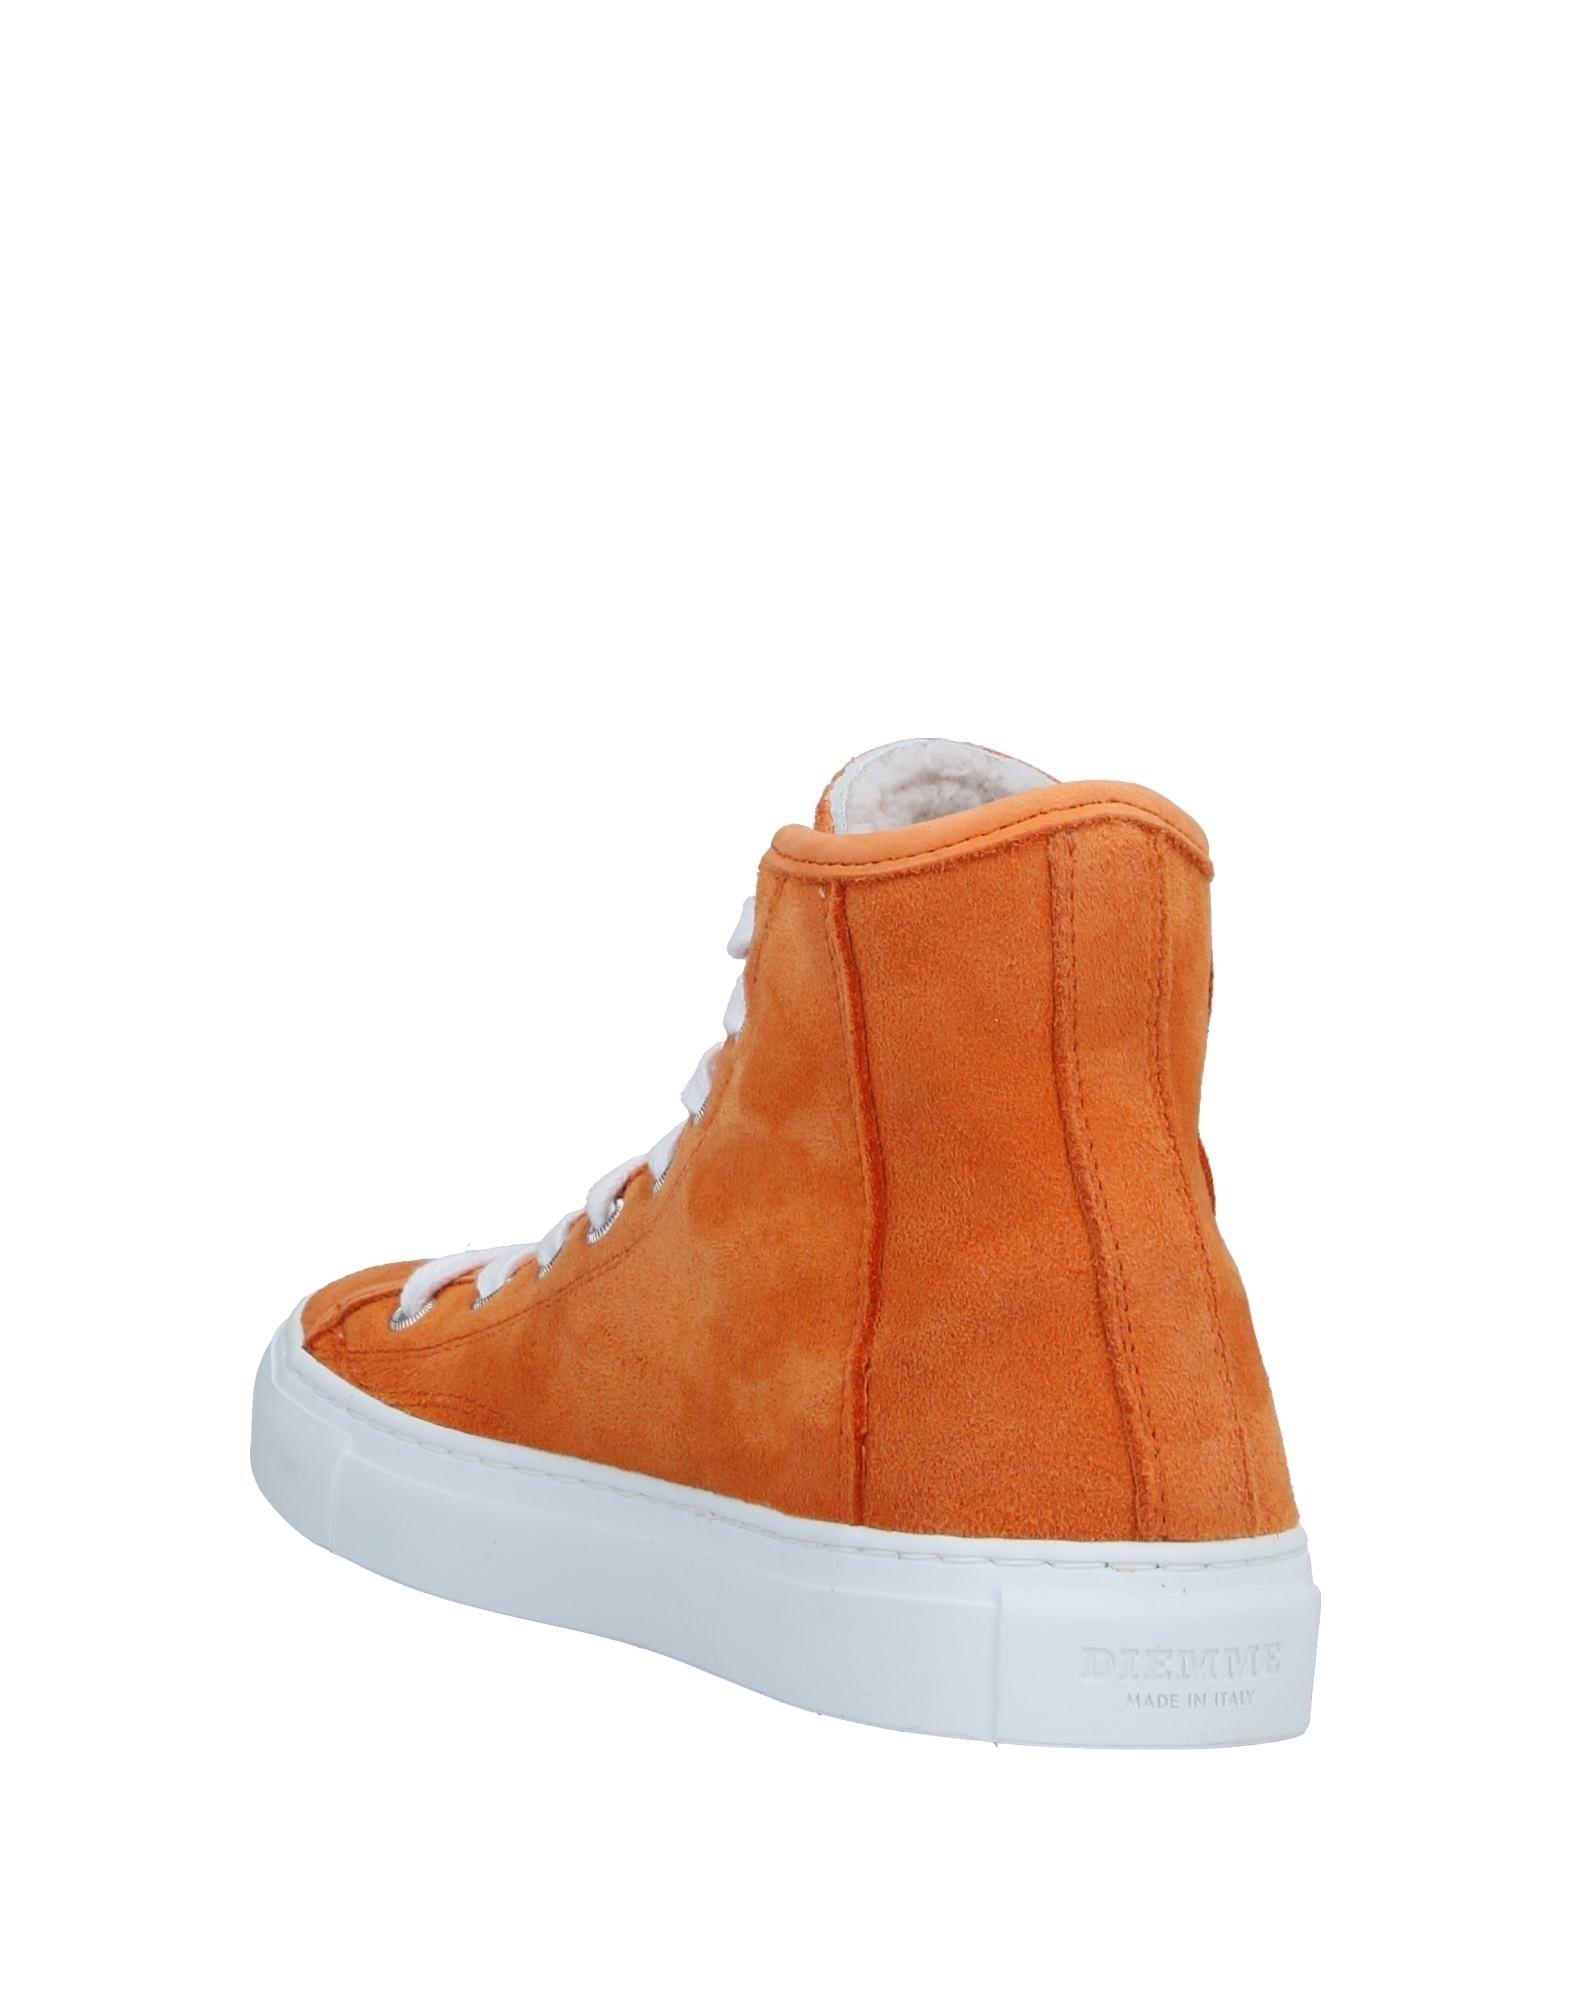 Diemme High-tops & Sneakers in Orange - Lyst